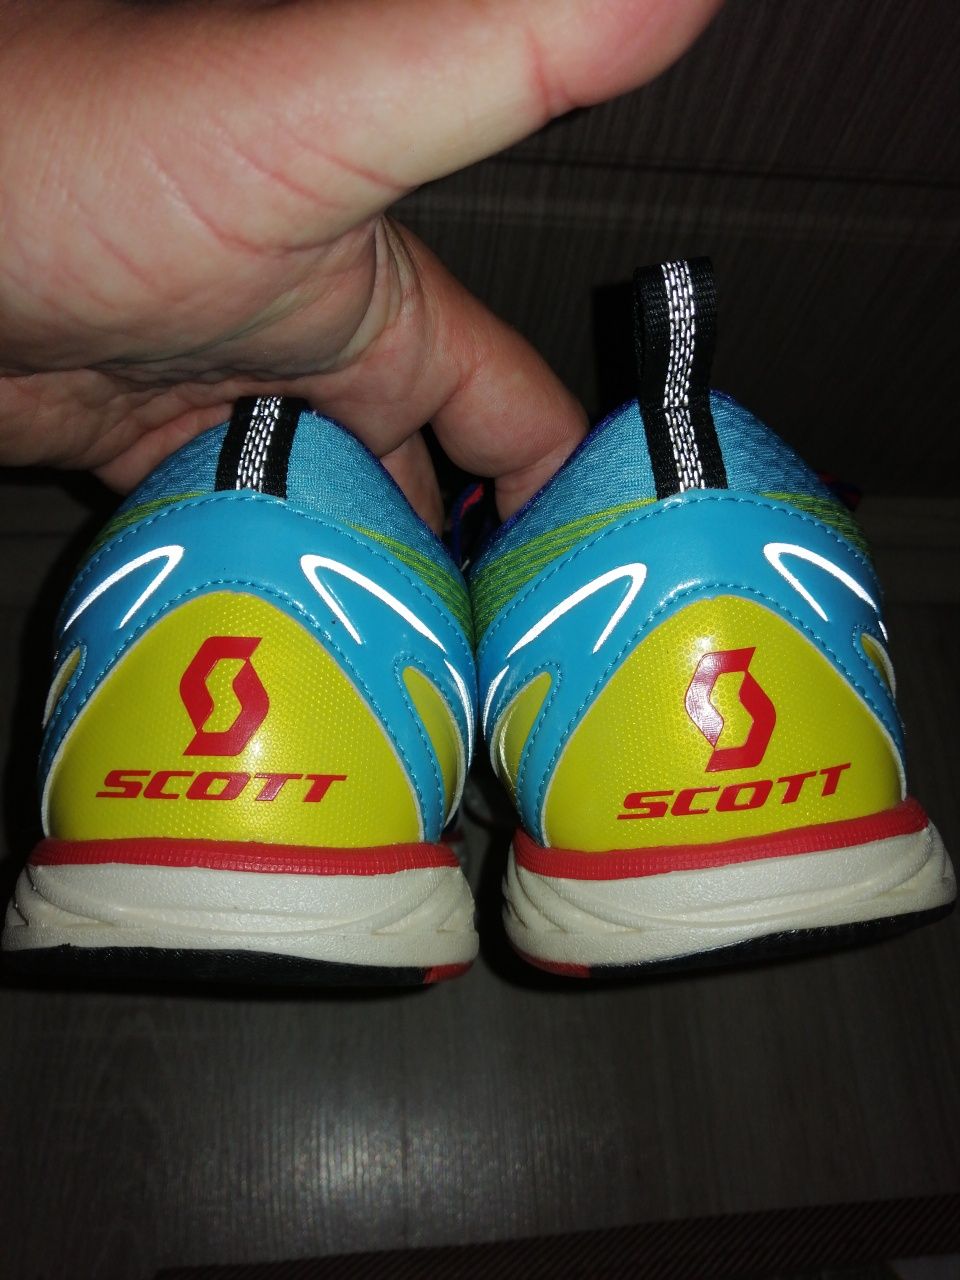 Scott racer rocker running adidasi bărbătești masura 47